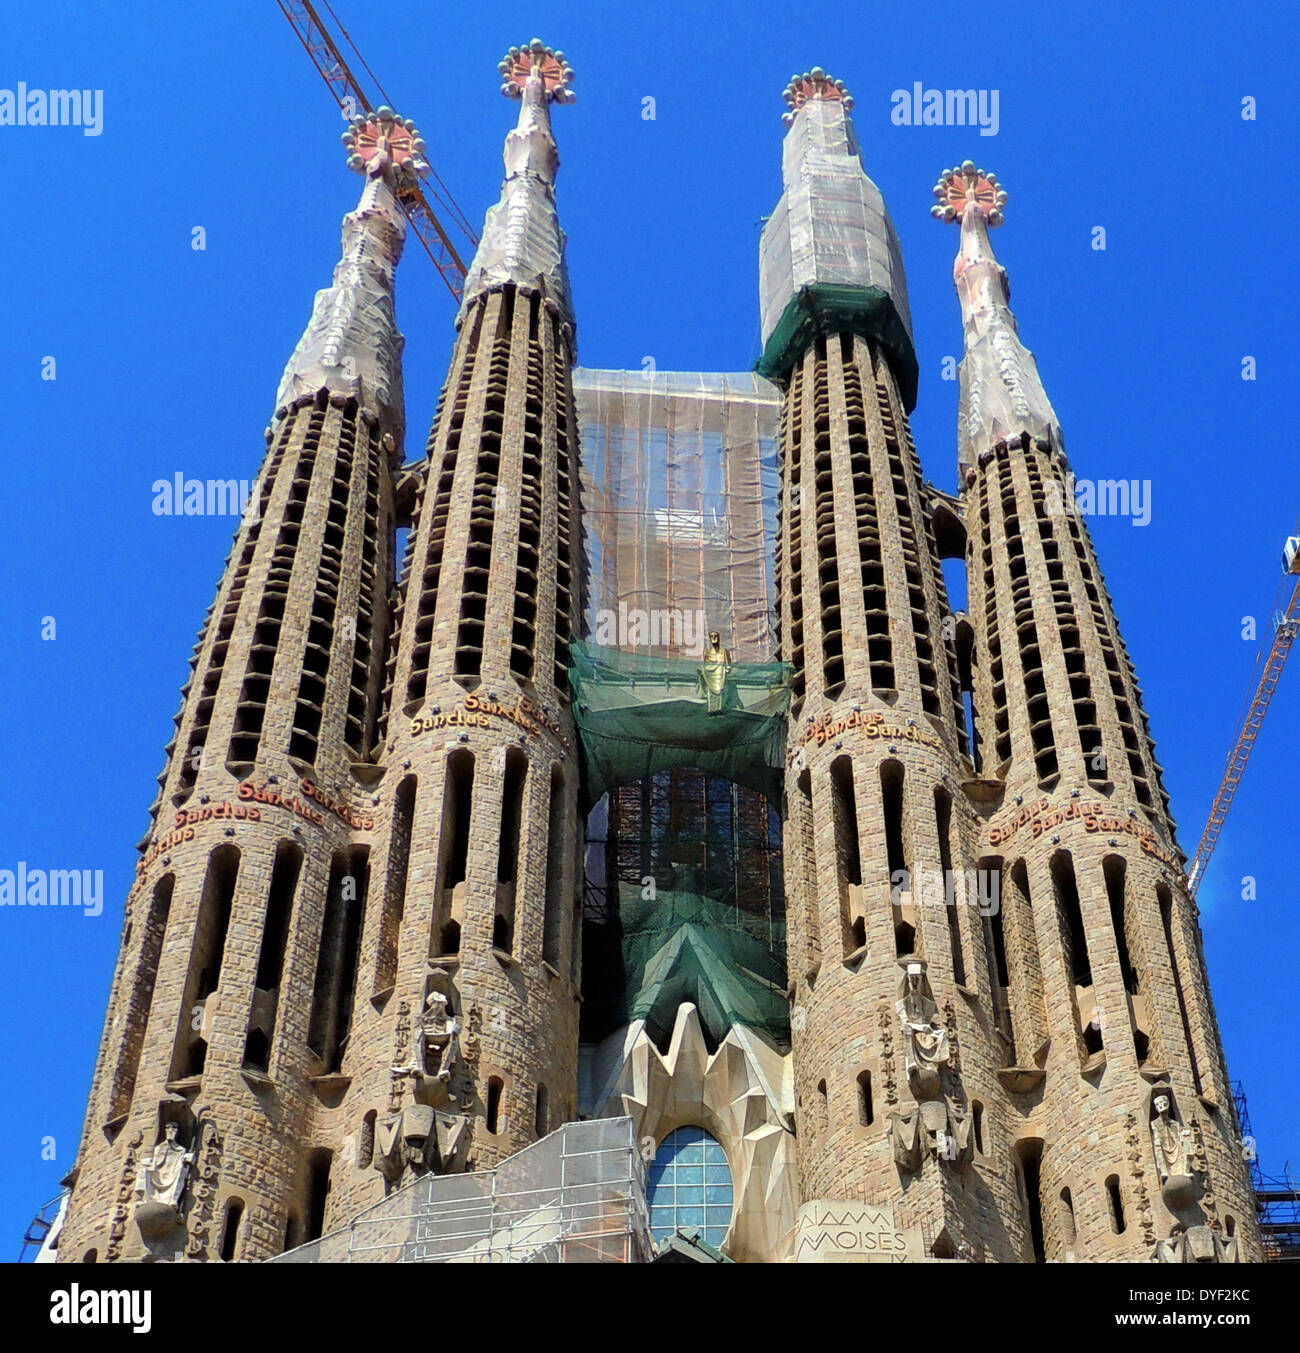 La Basílica i Templo de la Sagrada Família, la Iglesia Católica Romana en  Barcelona, España. diseñado por el arquitecto catalán Antoni Gaudí  (1852-1926). Aunque incompleta, la iglesia es un sitio del Patrimonio